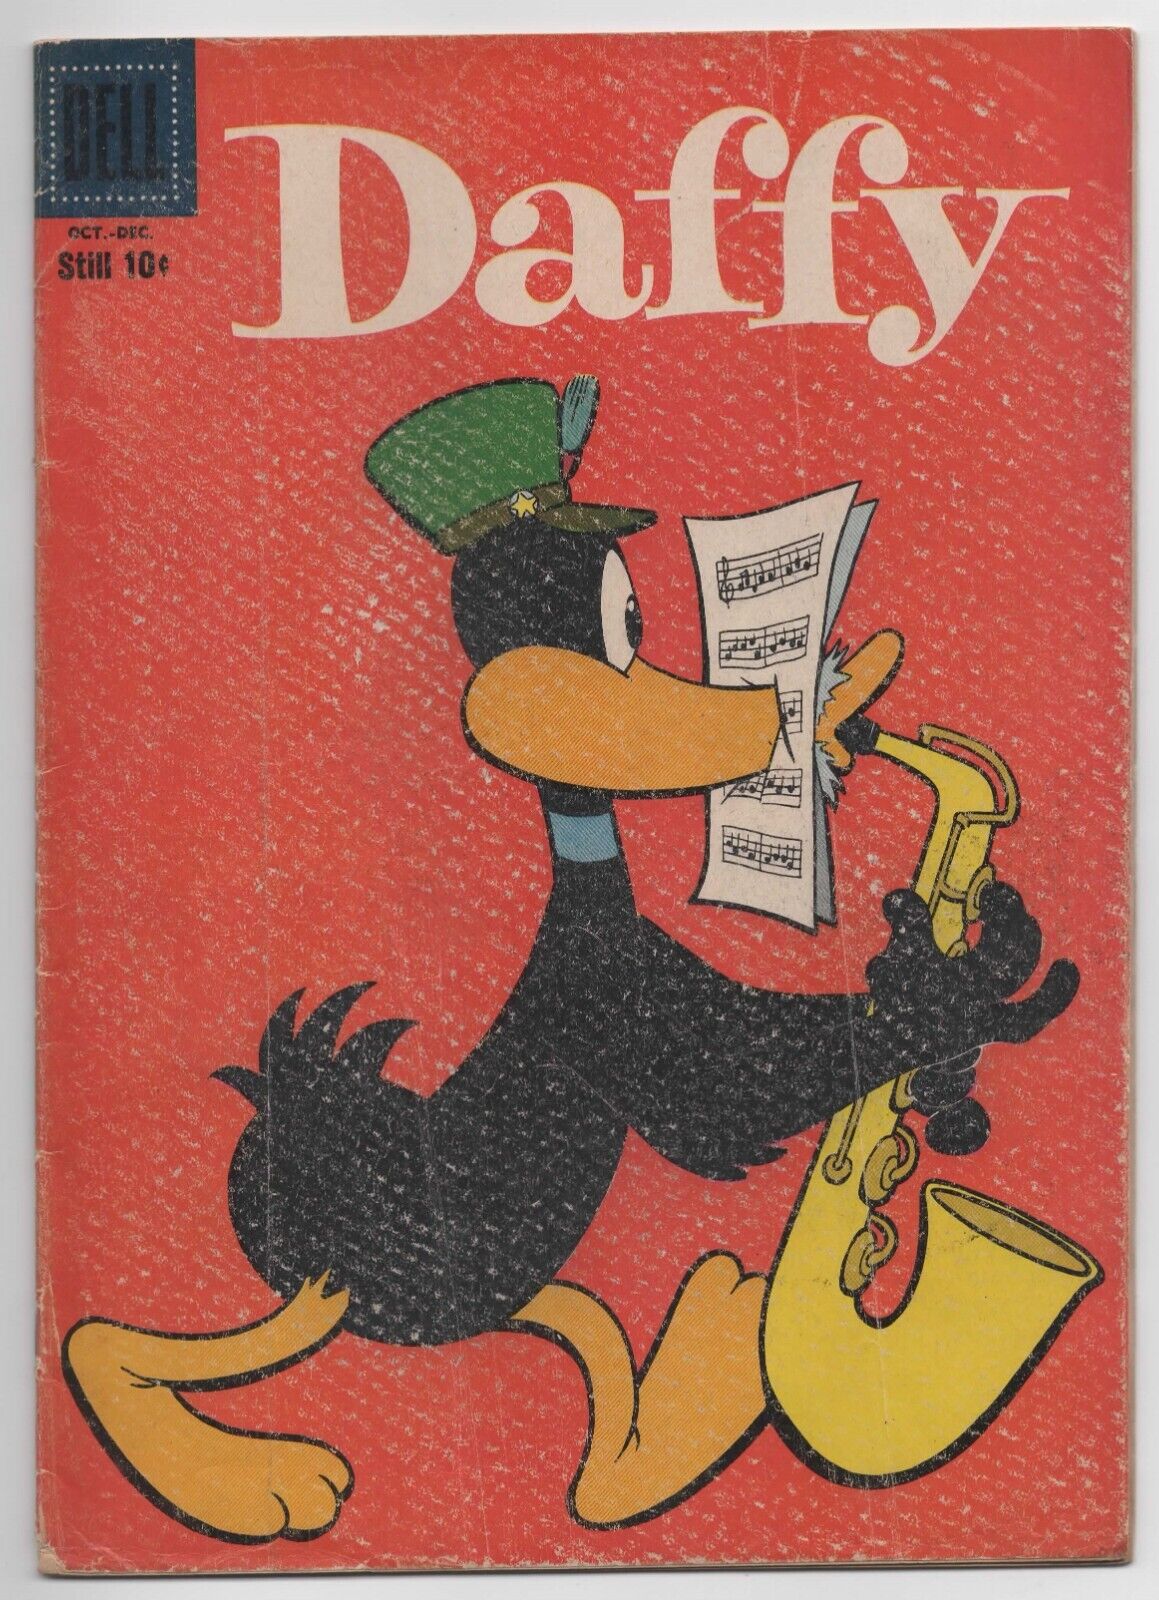 Daffy #15  (October 1958, Dell Comics)